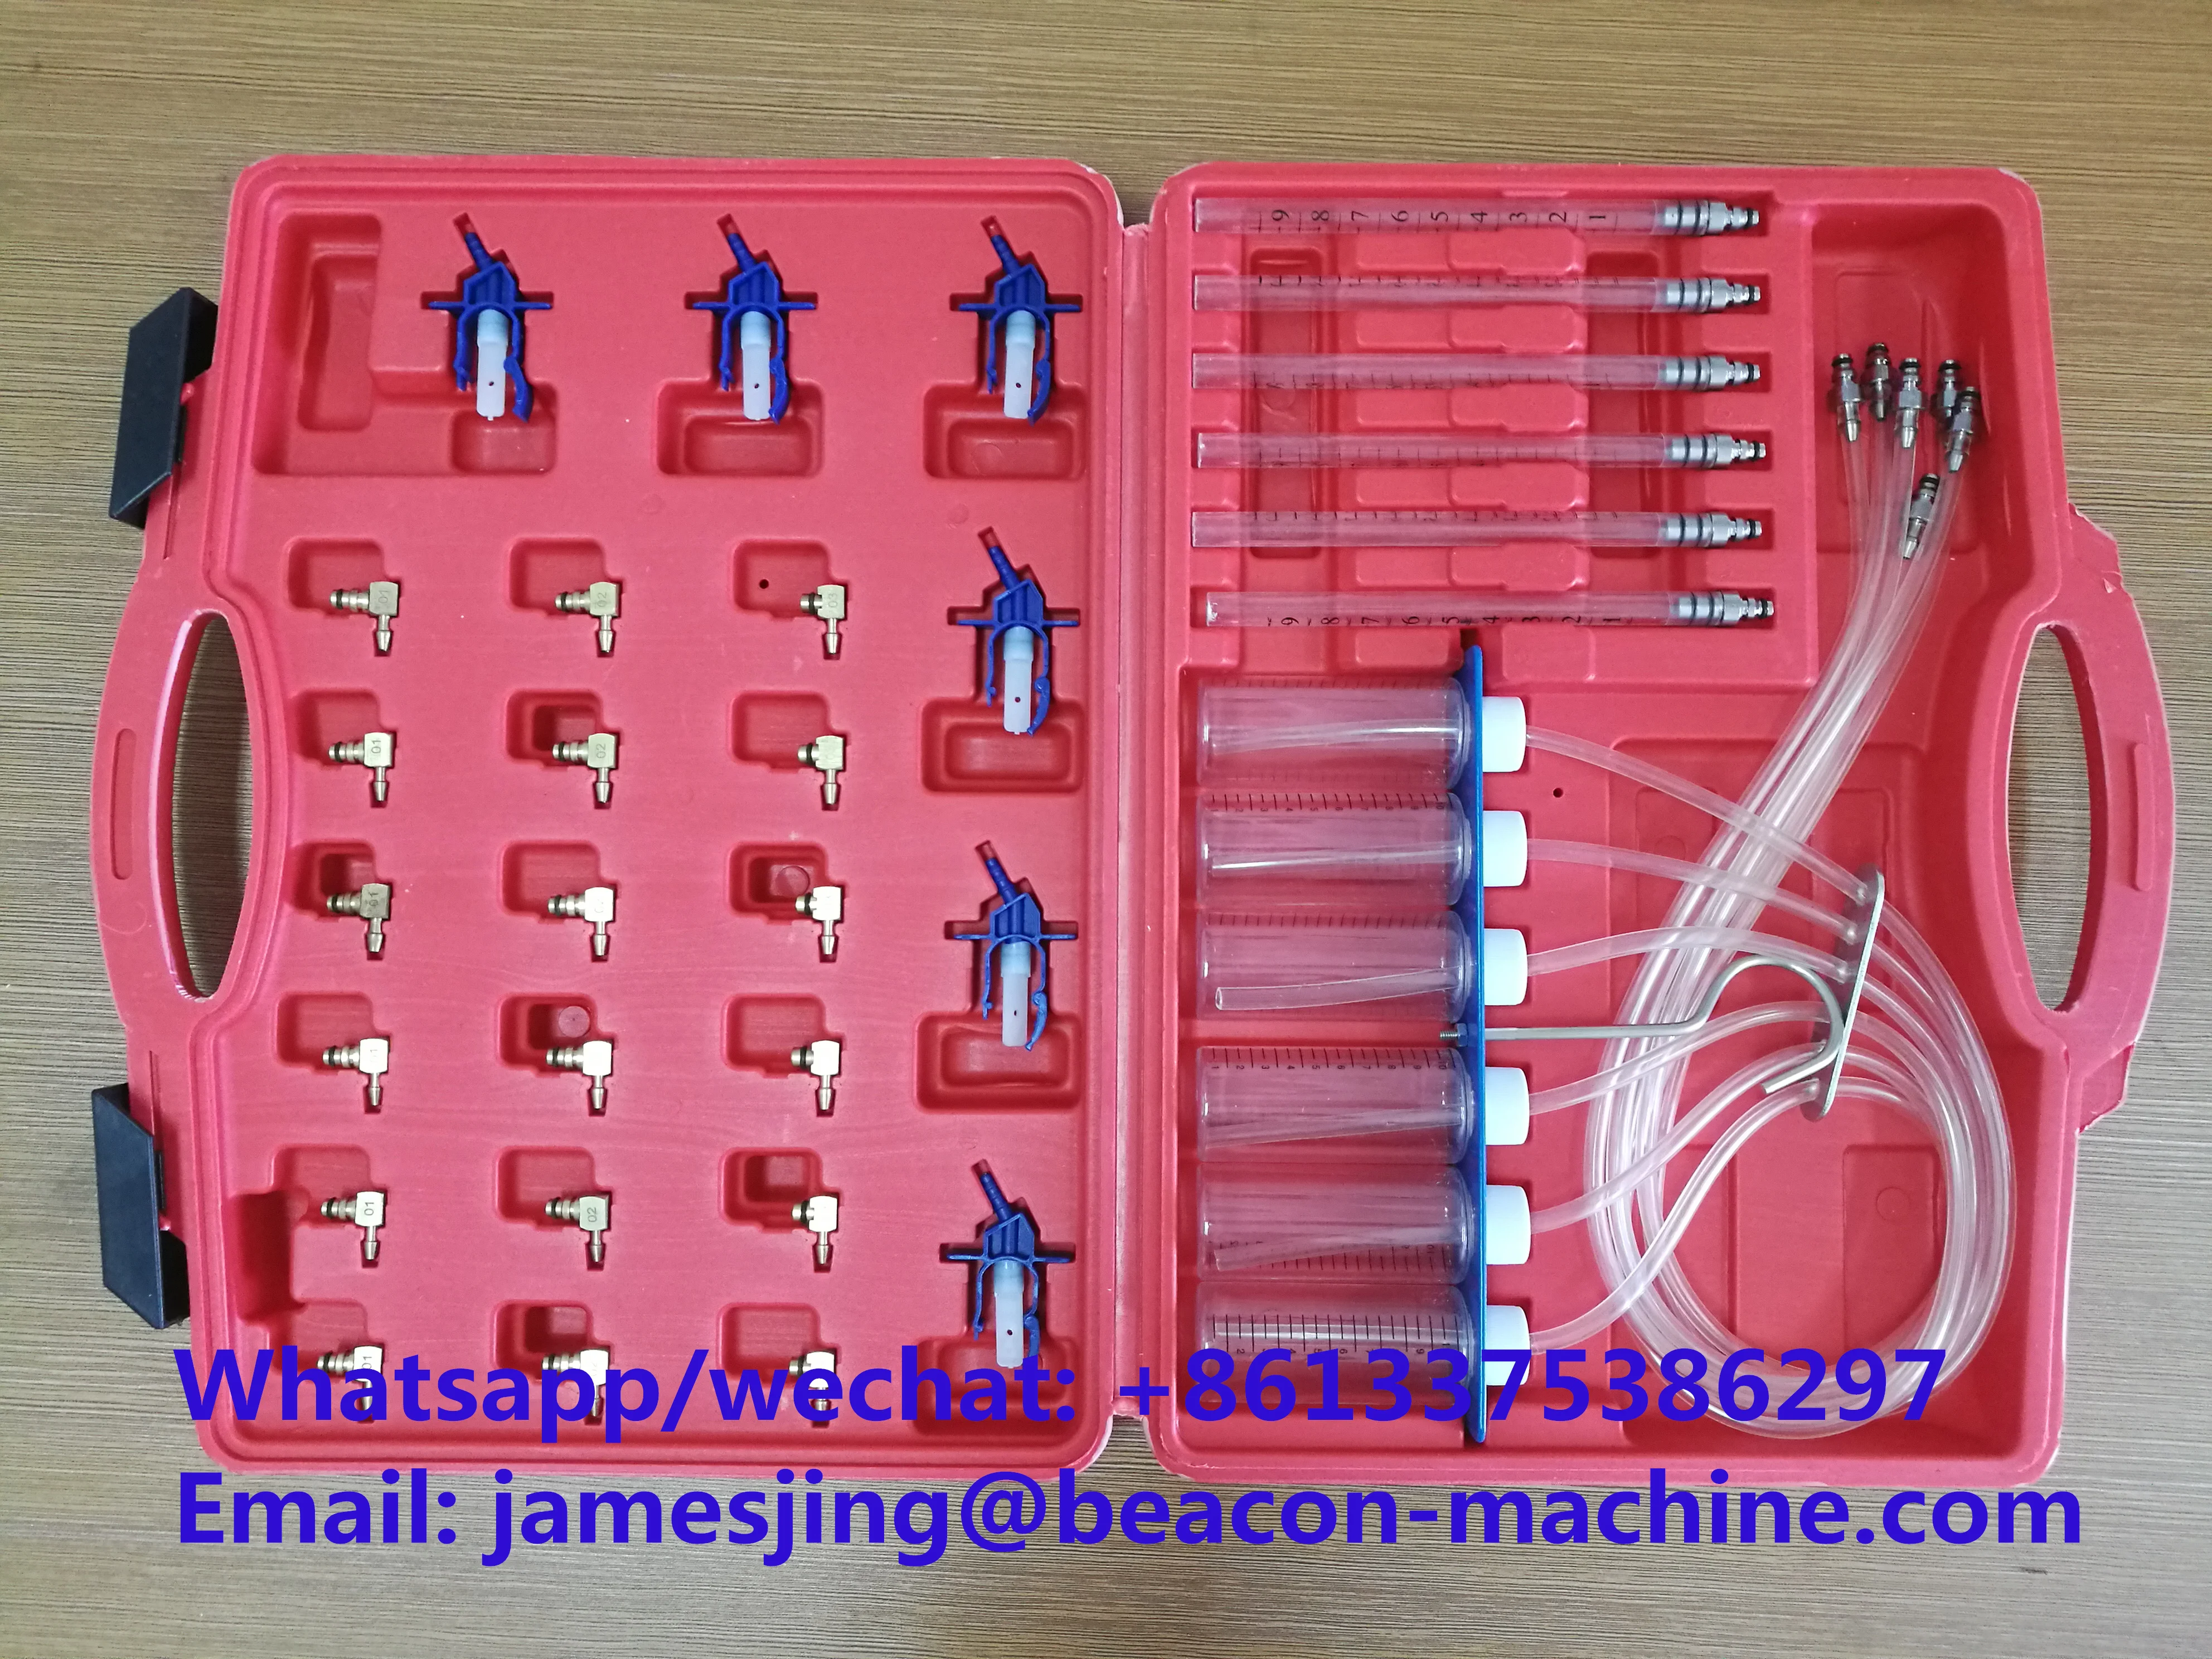 

Diesel Injector Flow Meter Test Kit, CR Adaptor Fuel Tester Set E1024119 Injector Return Flow Diagnostic Measurement Tool